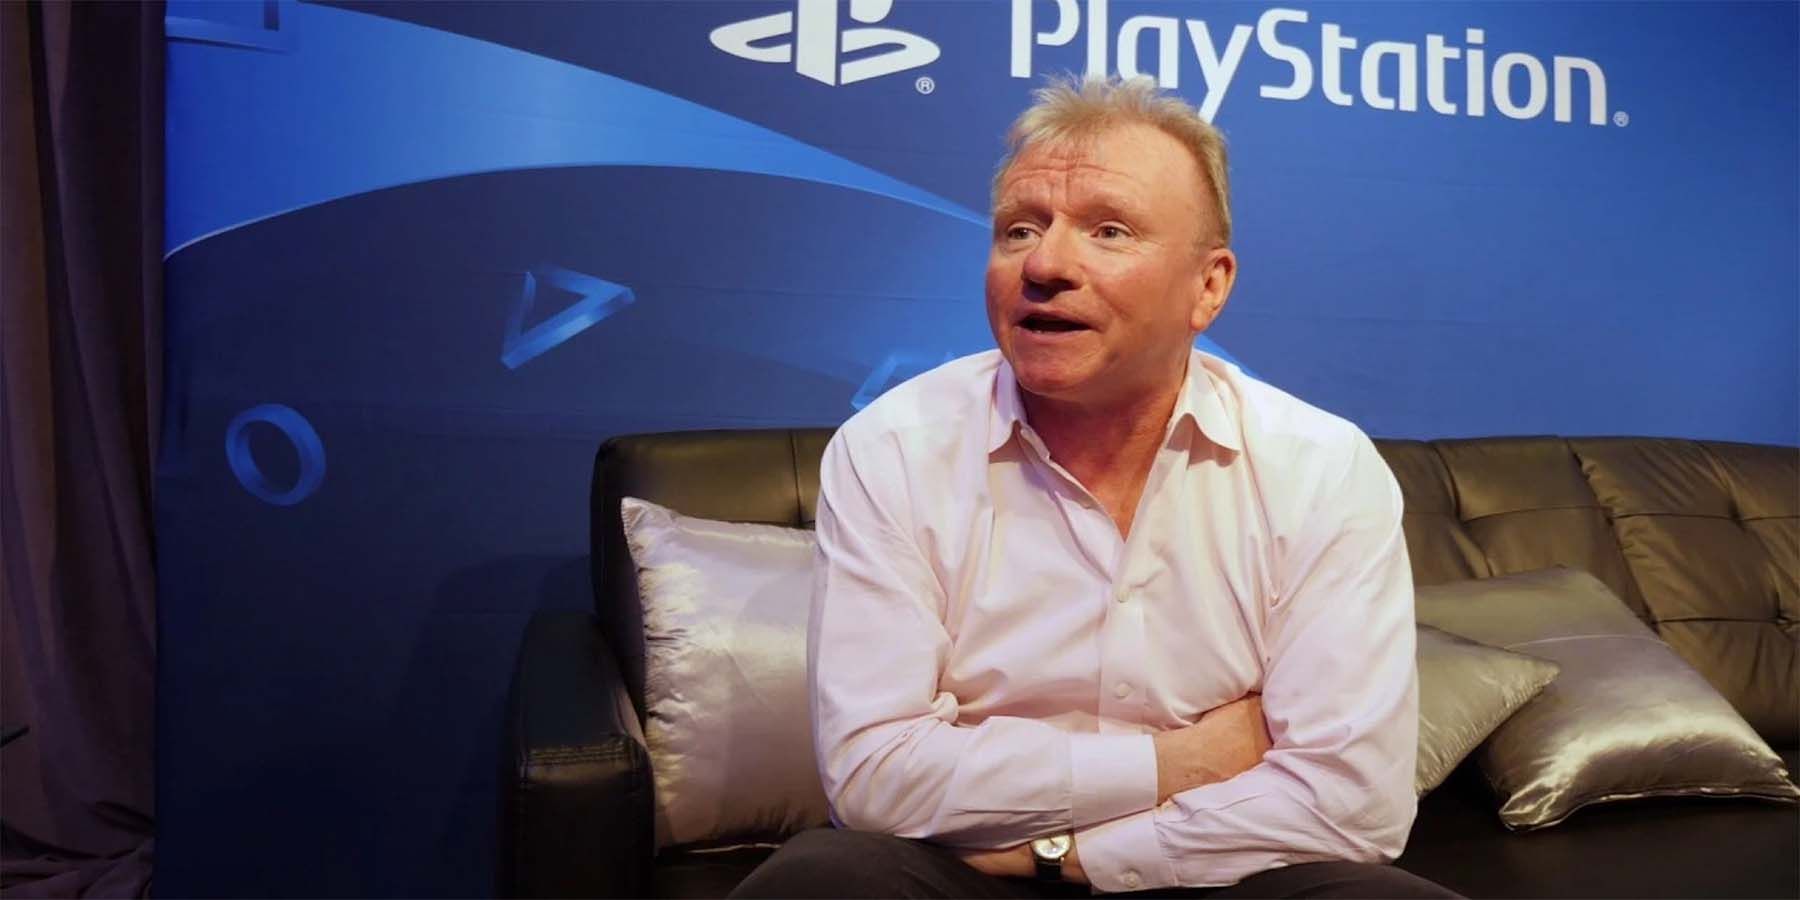 PlayStation’ın Jim Ryan, Gaming’in geçmiş ve geleceğini Fireside sohbetinde tartışmak üzere